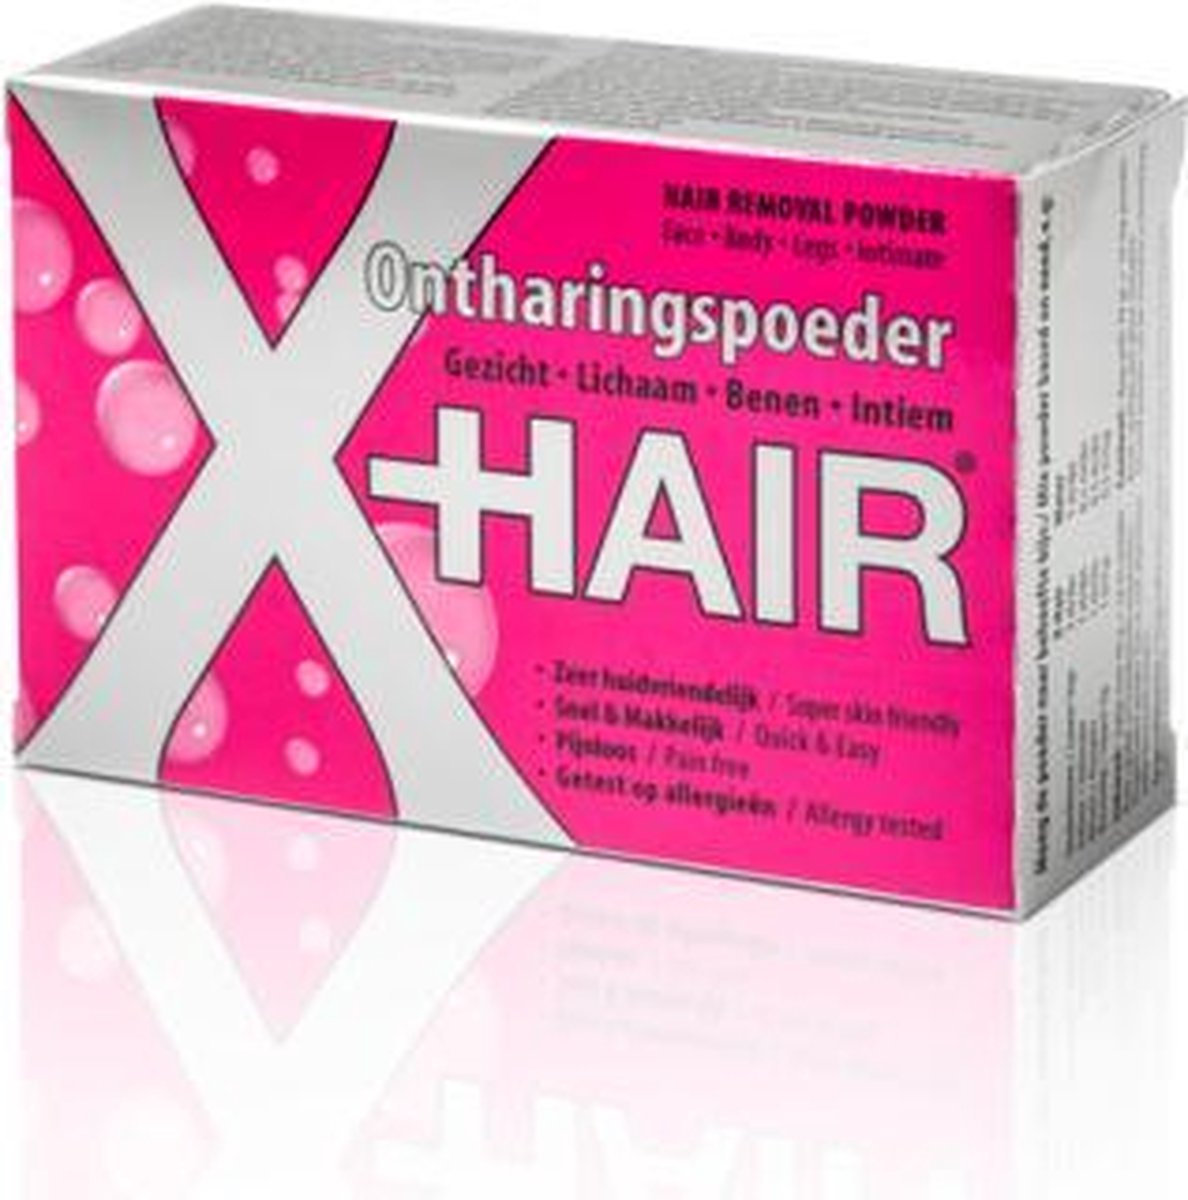 X-Hair ontharingspoeder - Gehele lichaam - mannen en vrouwen - X-Hair ontharingspoeder